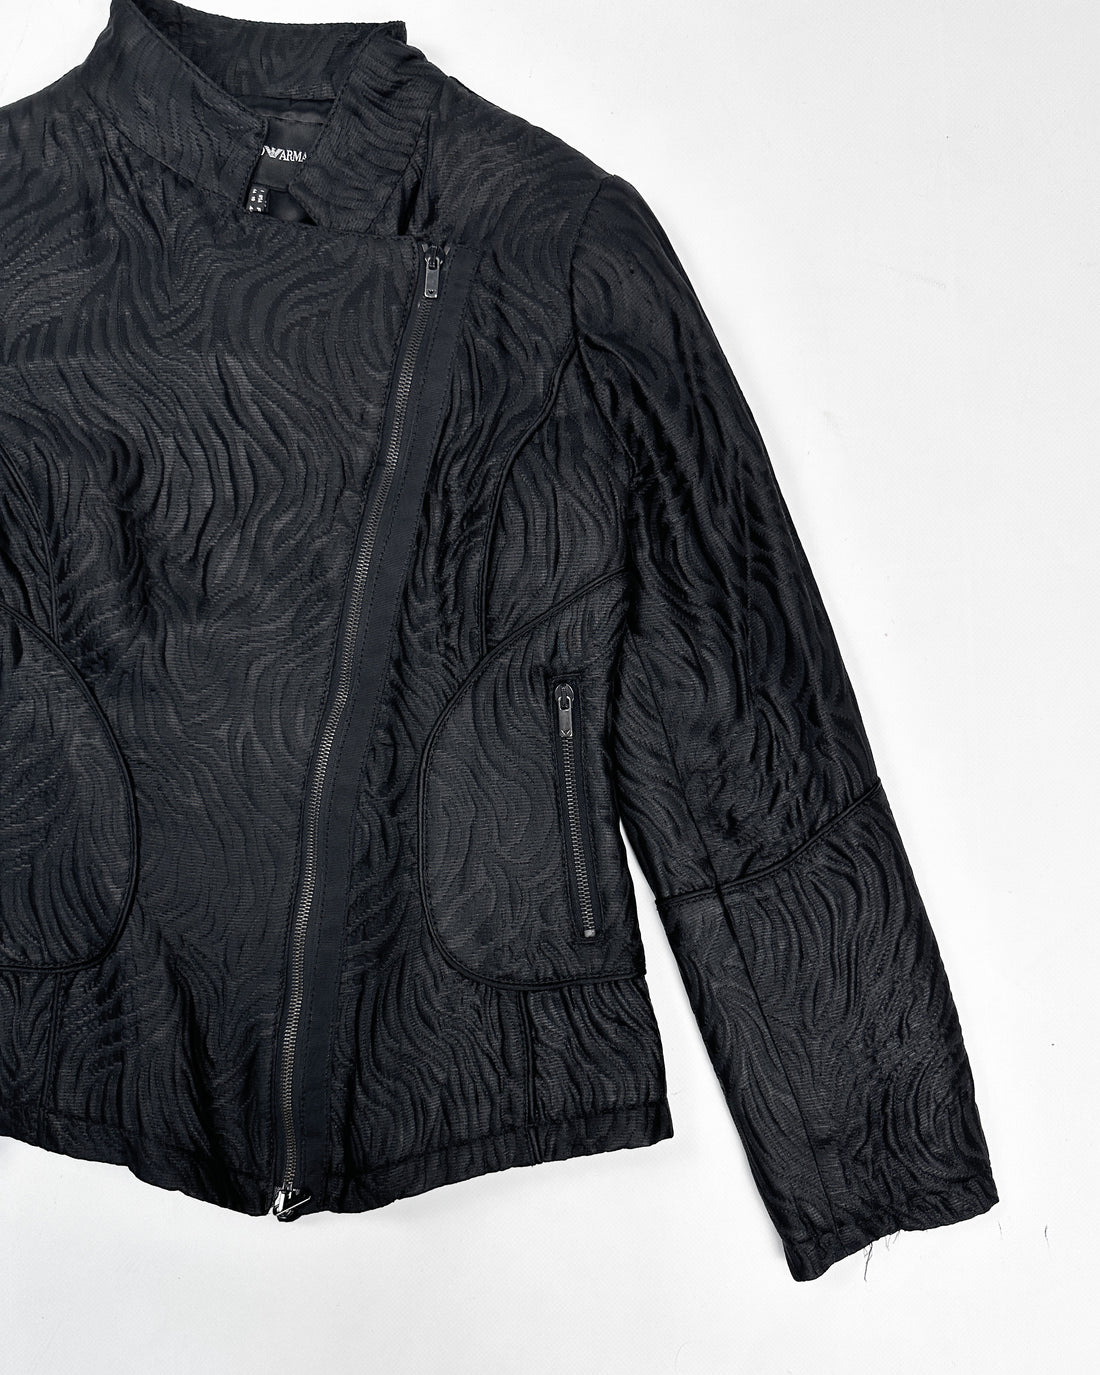 Armani Asymmetric Black Texture Jacket 2000's